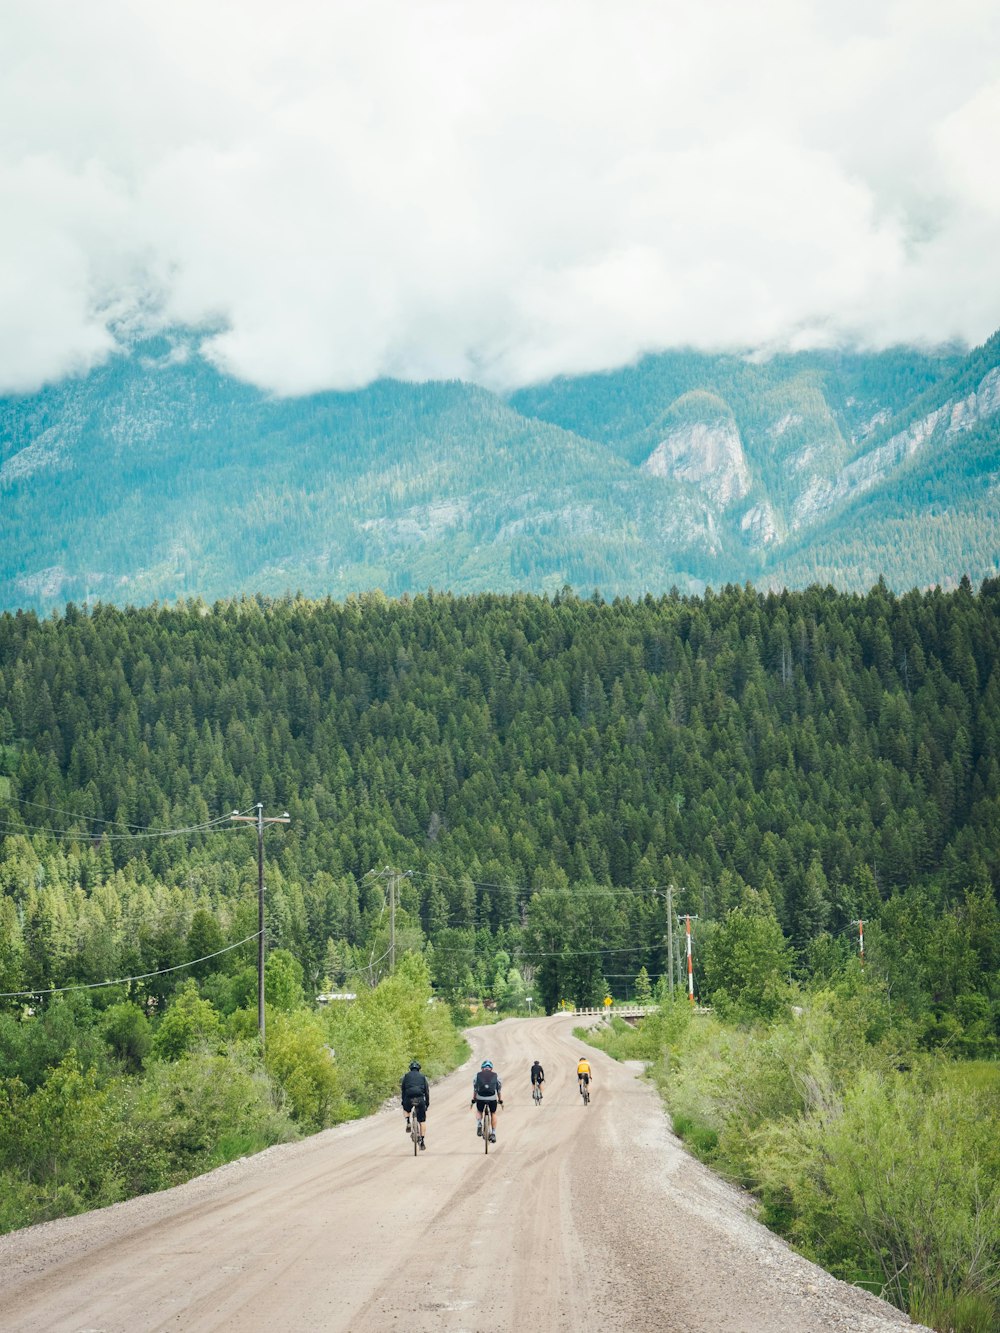 un groupe de personnes à vélo sur un chemin de terre en face d’une chaîne de montagnes